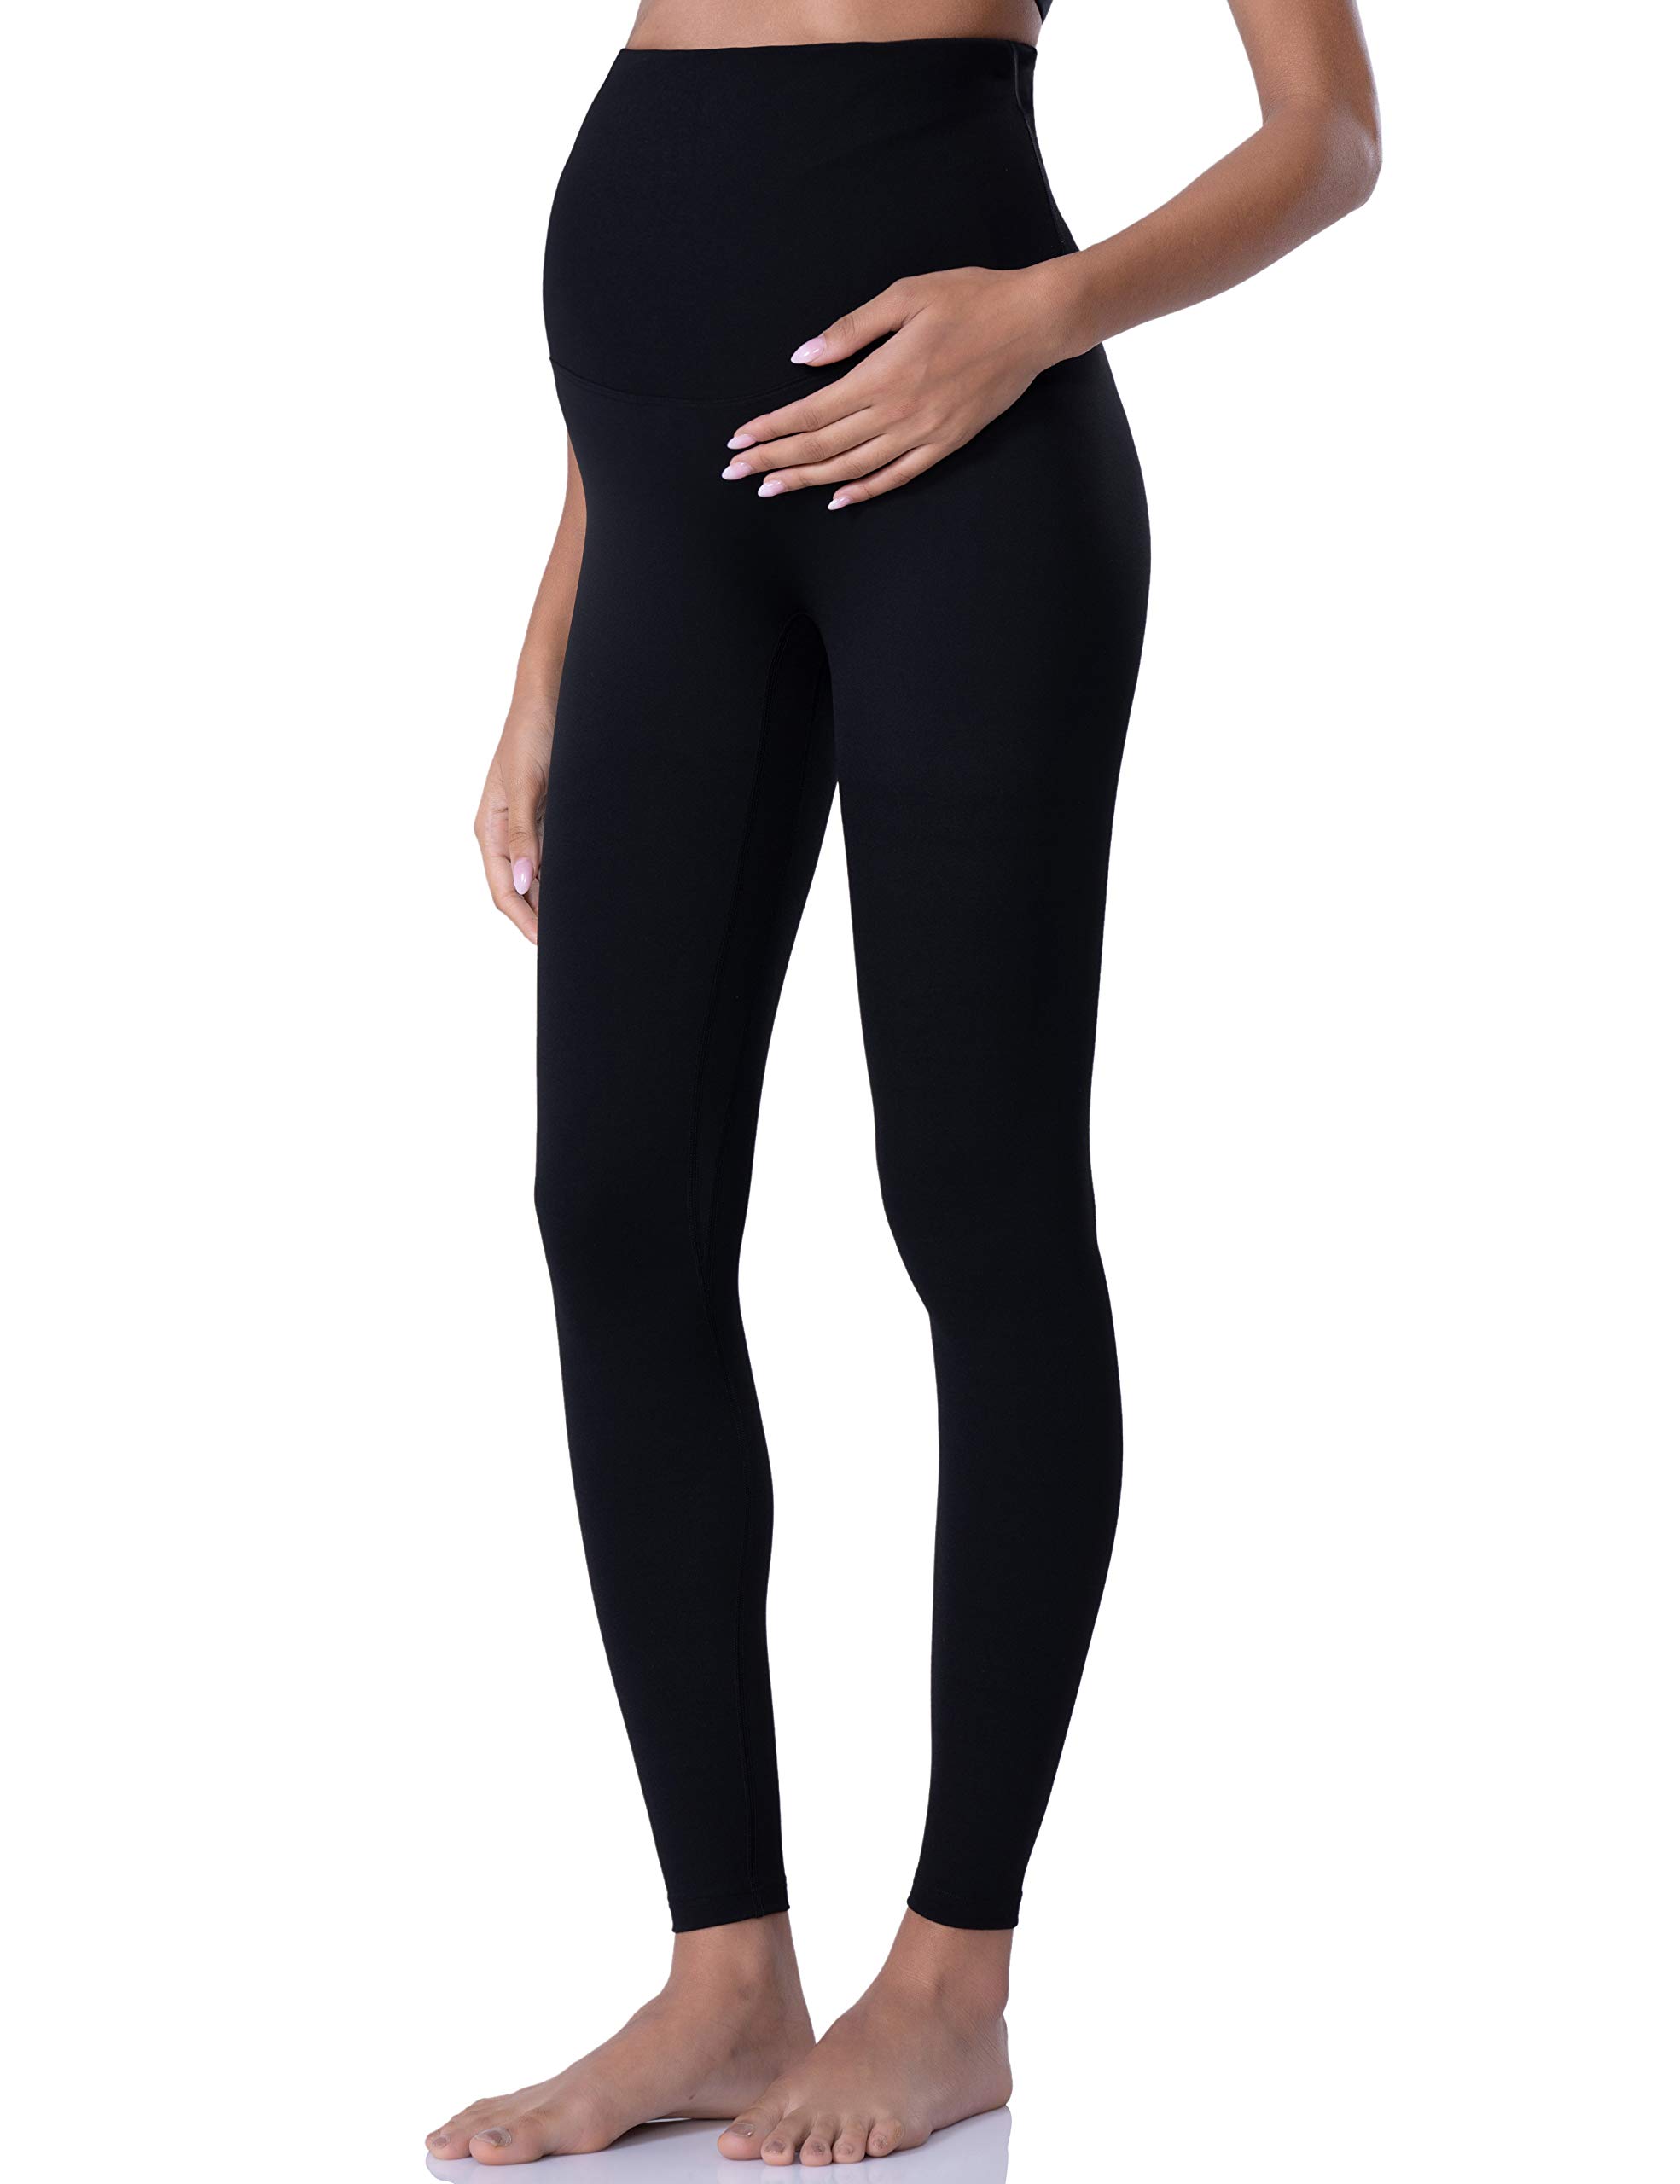 POSHDIVAH Damen Umstandsleggings über dem Bauch Schwangerschaft Yoga Hosen Active Wear Workout Leggings, schwarz, Mittel